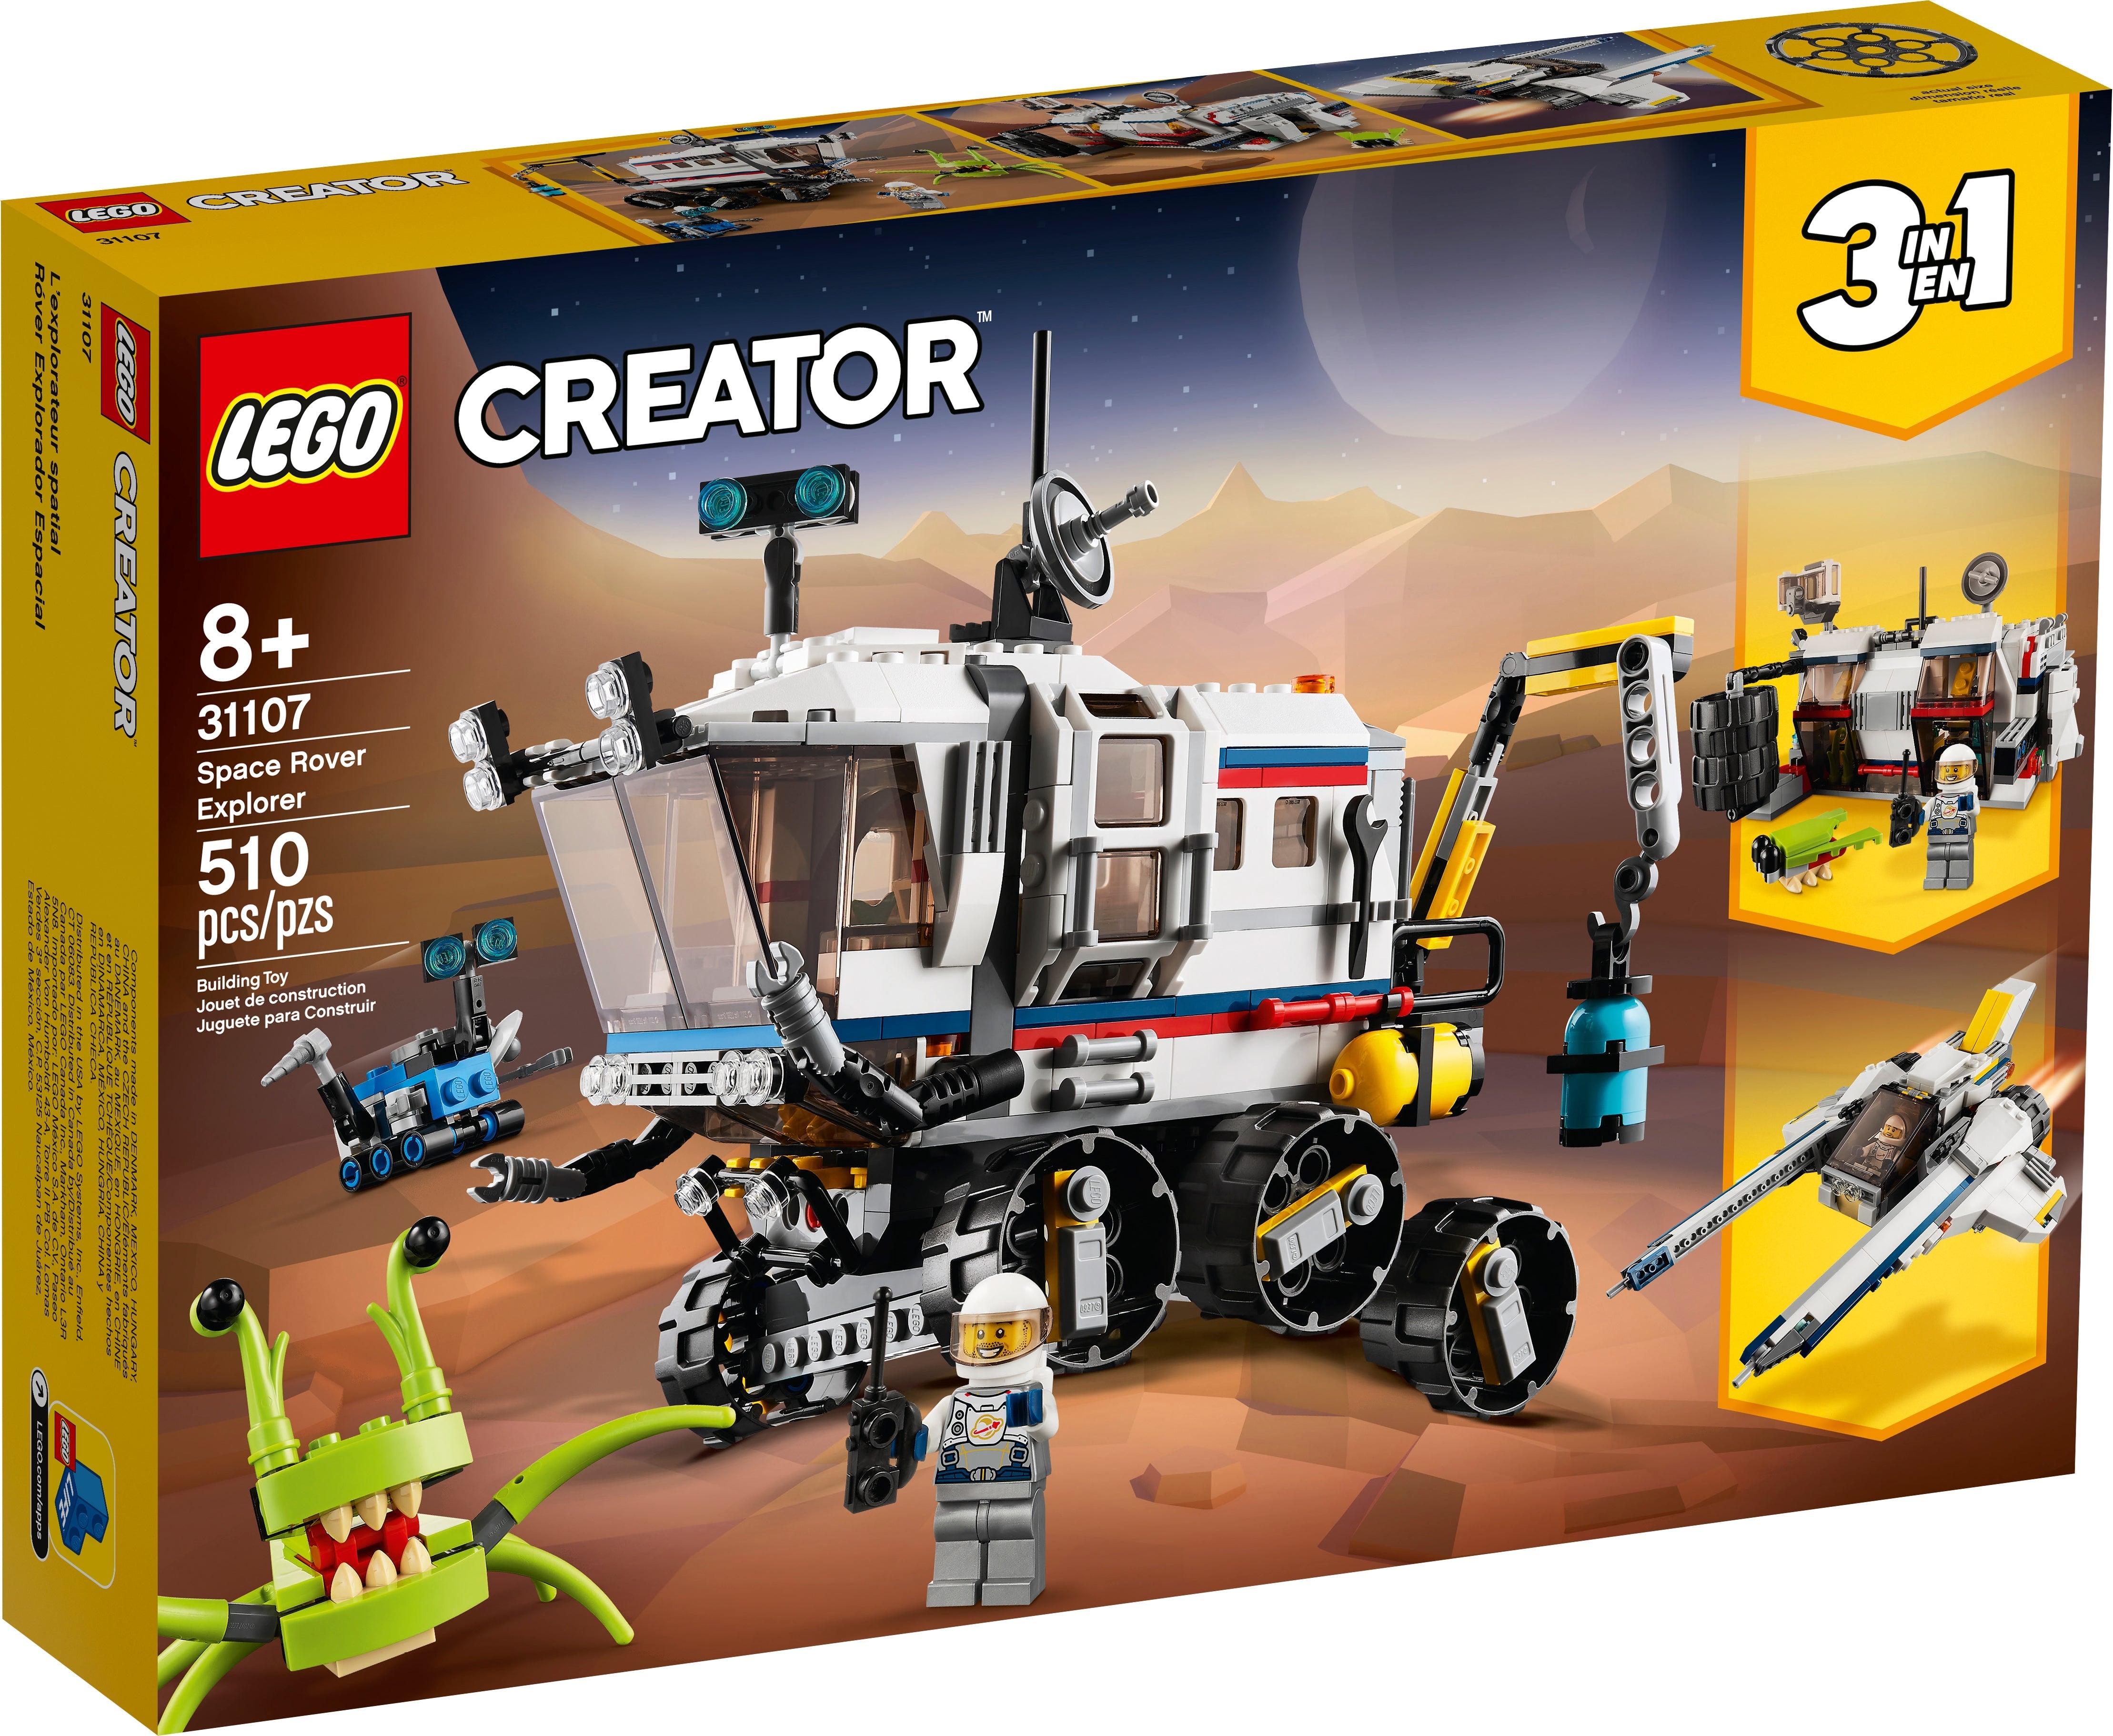 LEGO Creator Planeten Erkundungs-Rover (31107) - im GOLDSTIEN.SHOP verfügbar mit Gratisversand ab Schweizer Lager! (5702016616330)